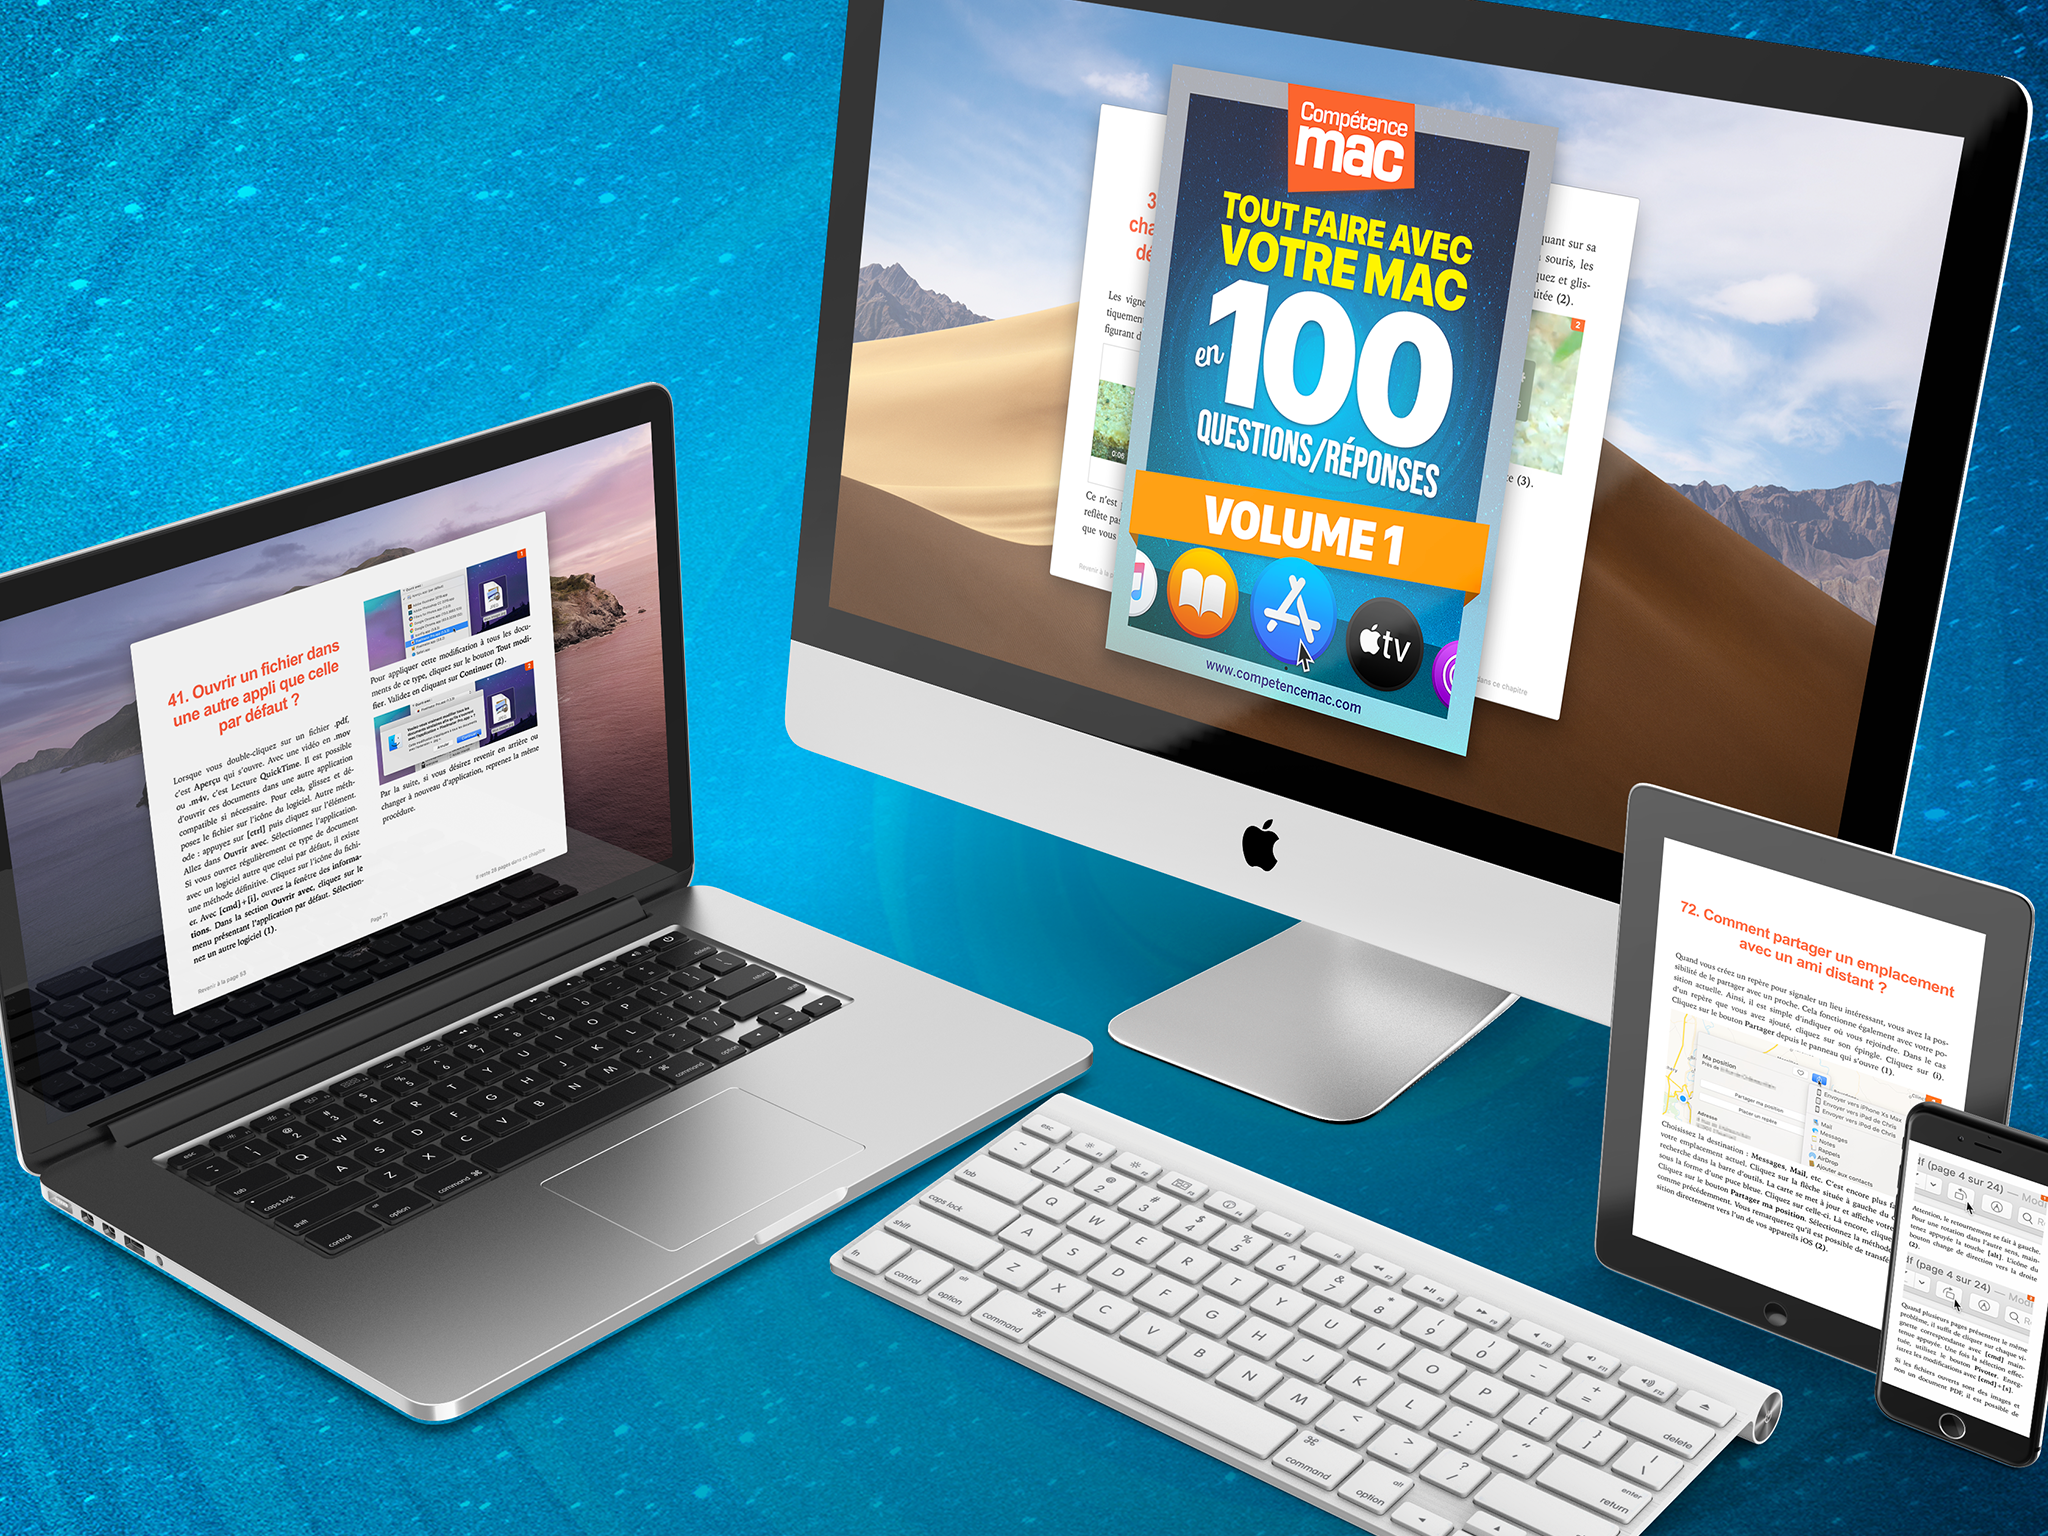 Compétence Mac • Tout faire avec votre Mac en 100 questions/réponses - Volume 1 (ebook)